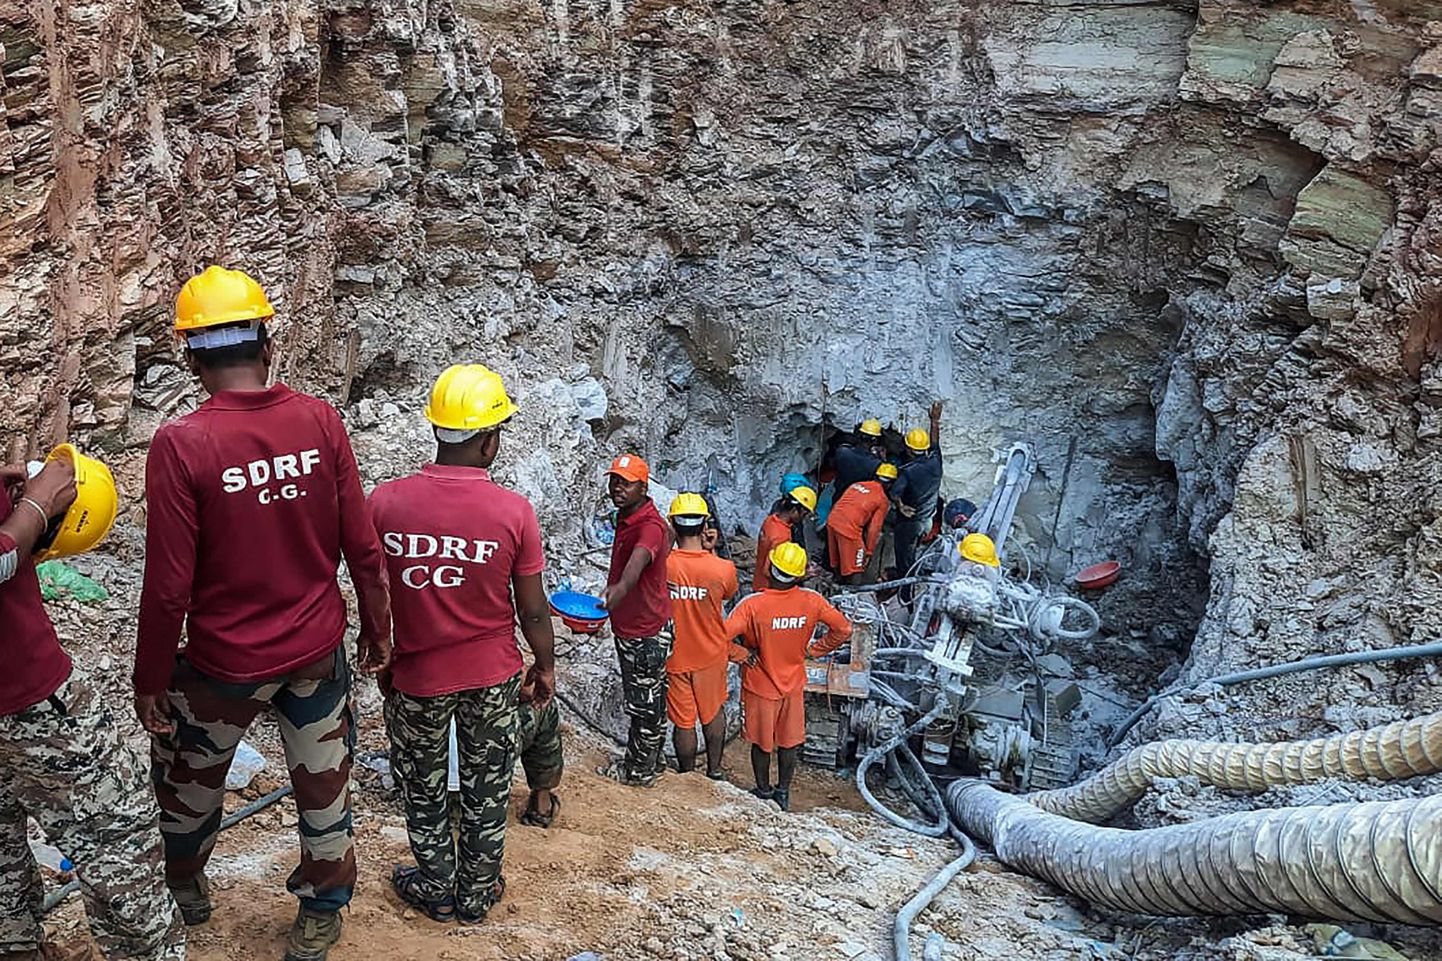 India päästetöötajad kaevasid 10-aastase poisi kitsast kaevust välja toomiseks selle kõrvale eraldi ligipääsu.